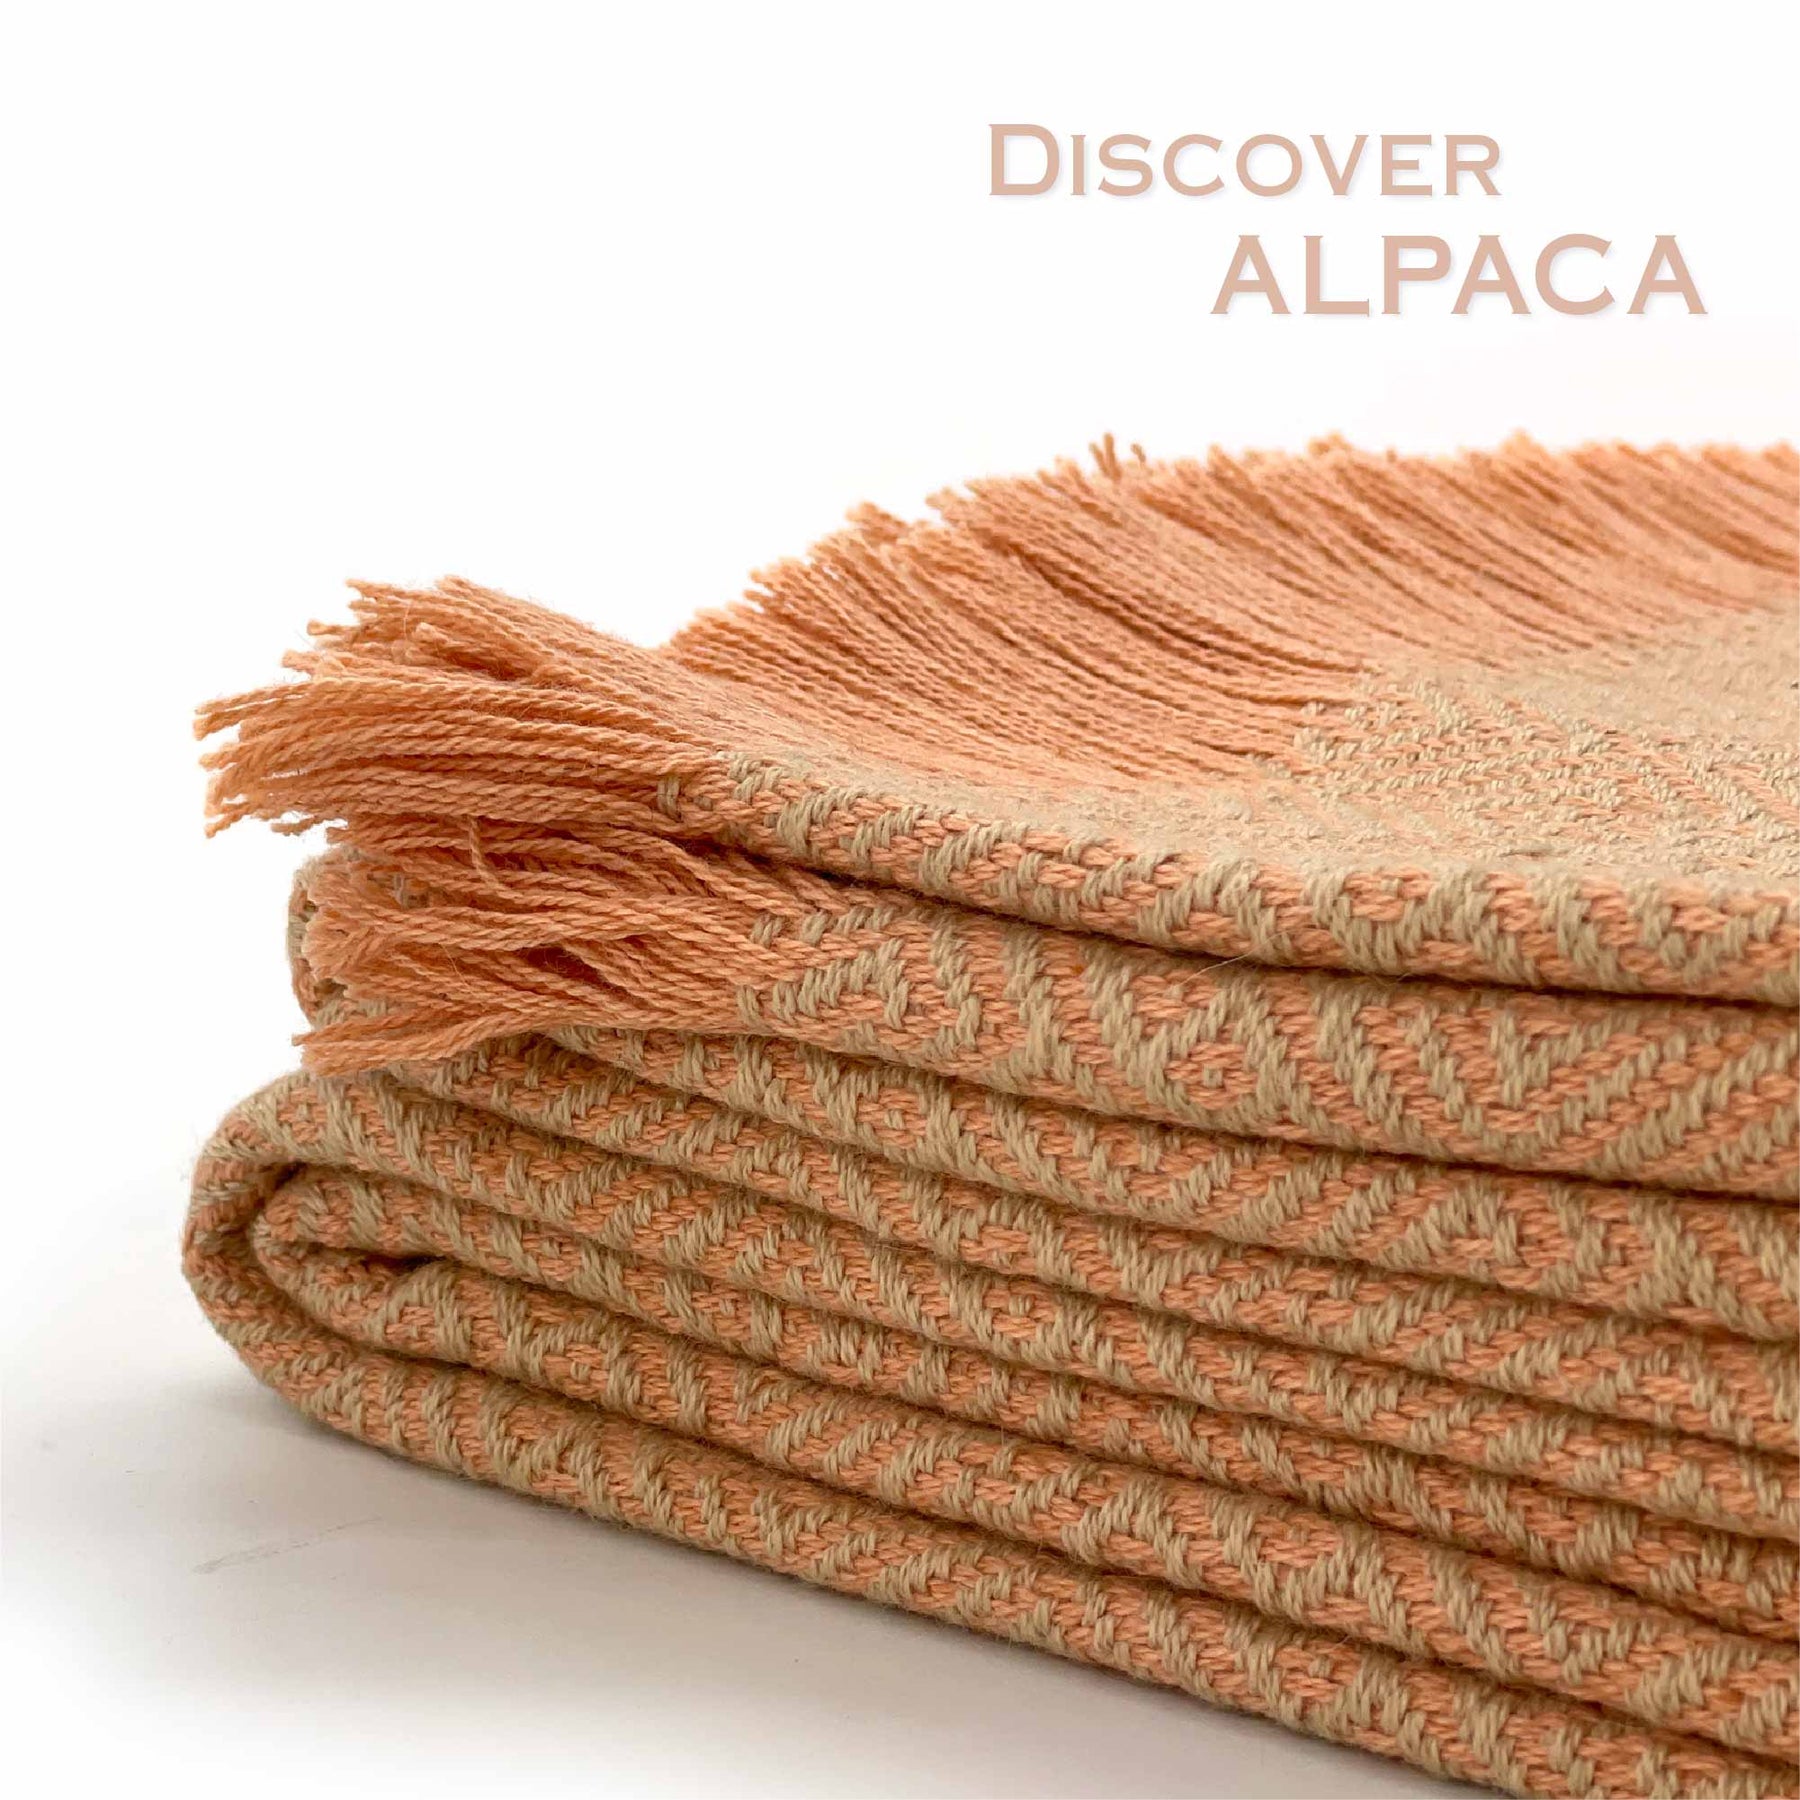 Alpaca Wool Throws - Inca